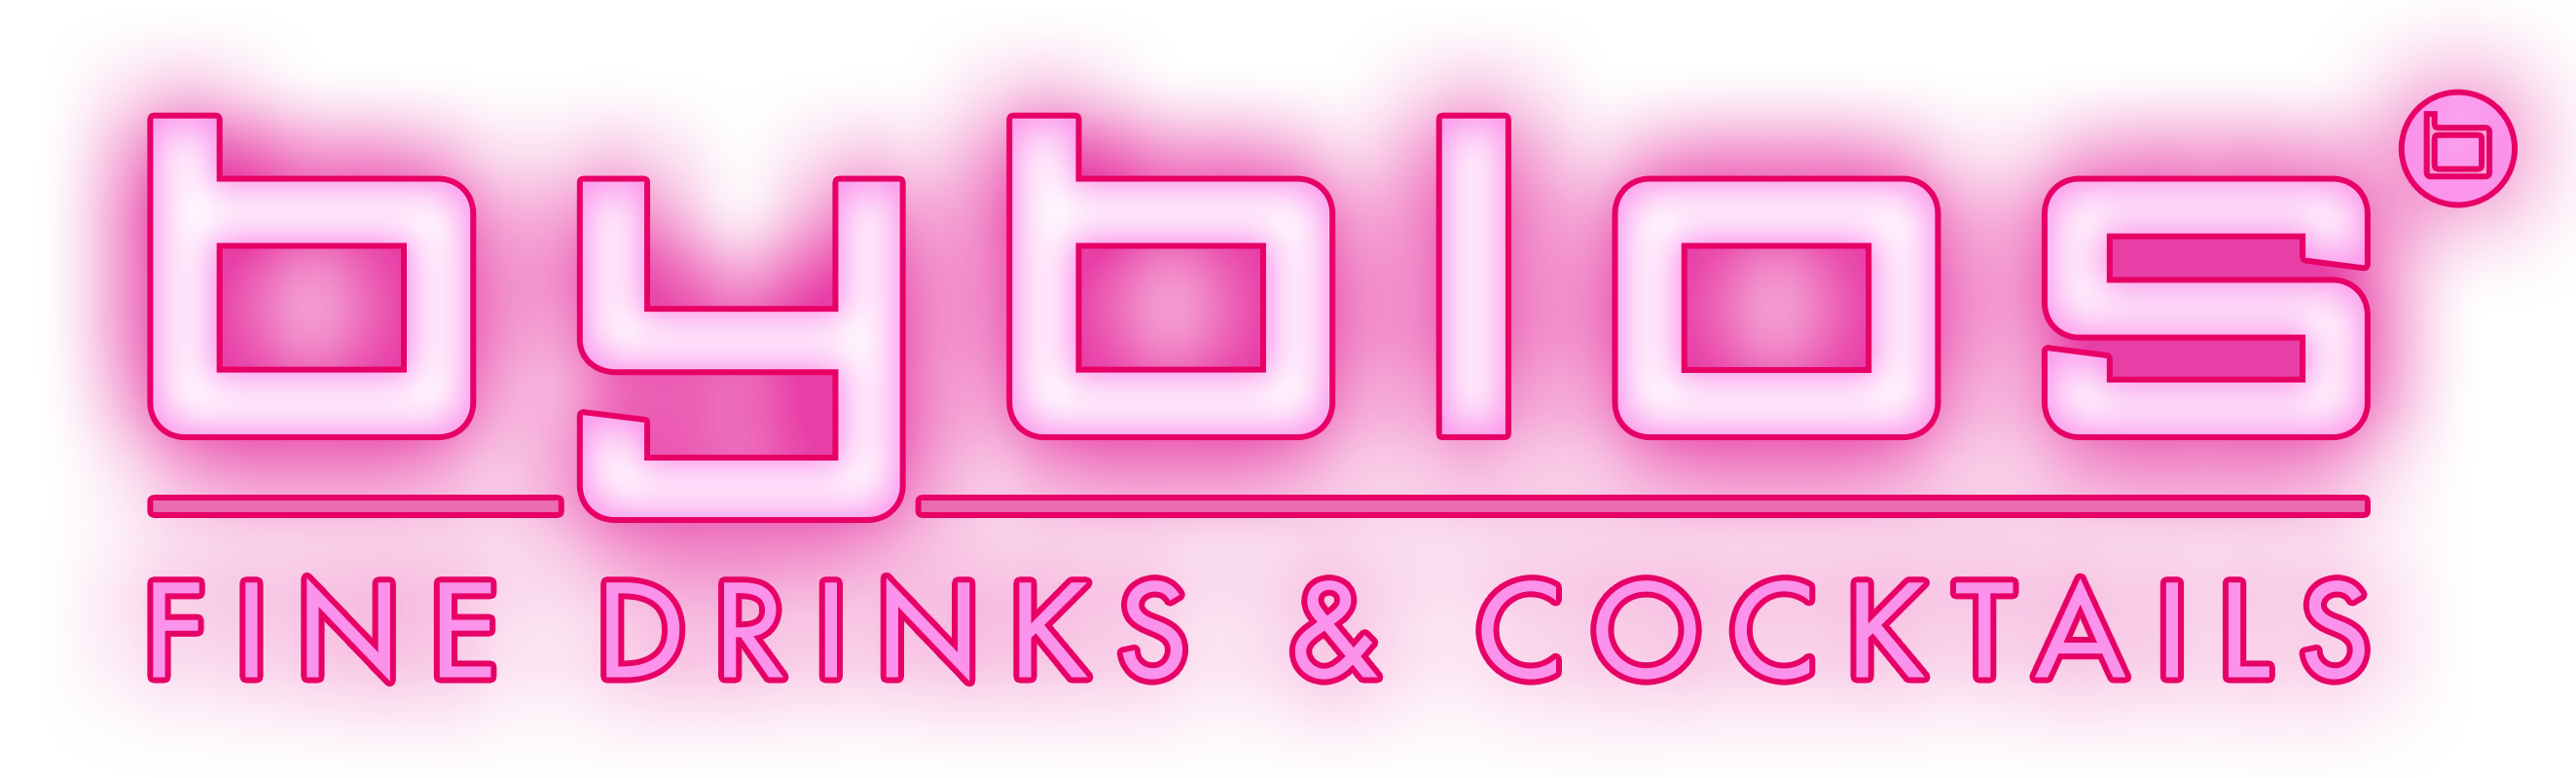 Logo - Byblos Hamburg - Shisha Lounge, Cocktail Bar & Club